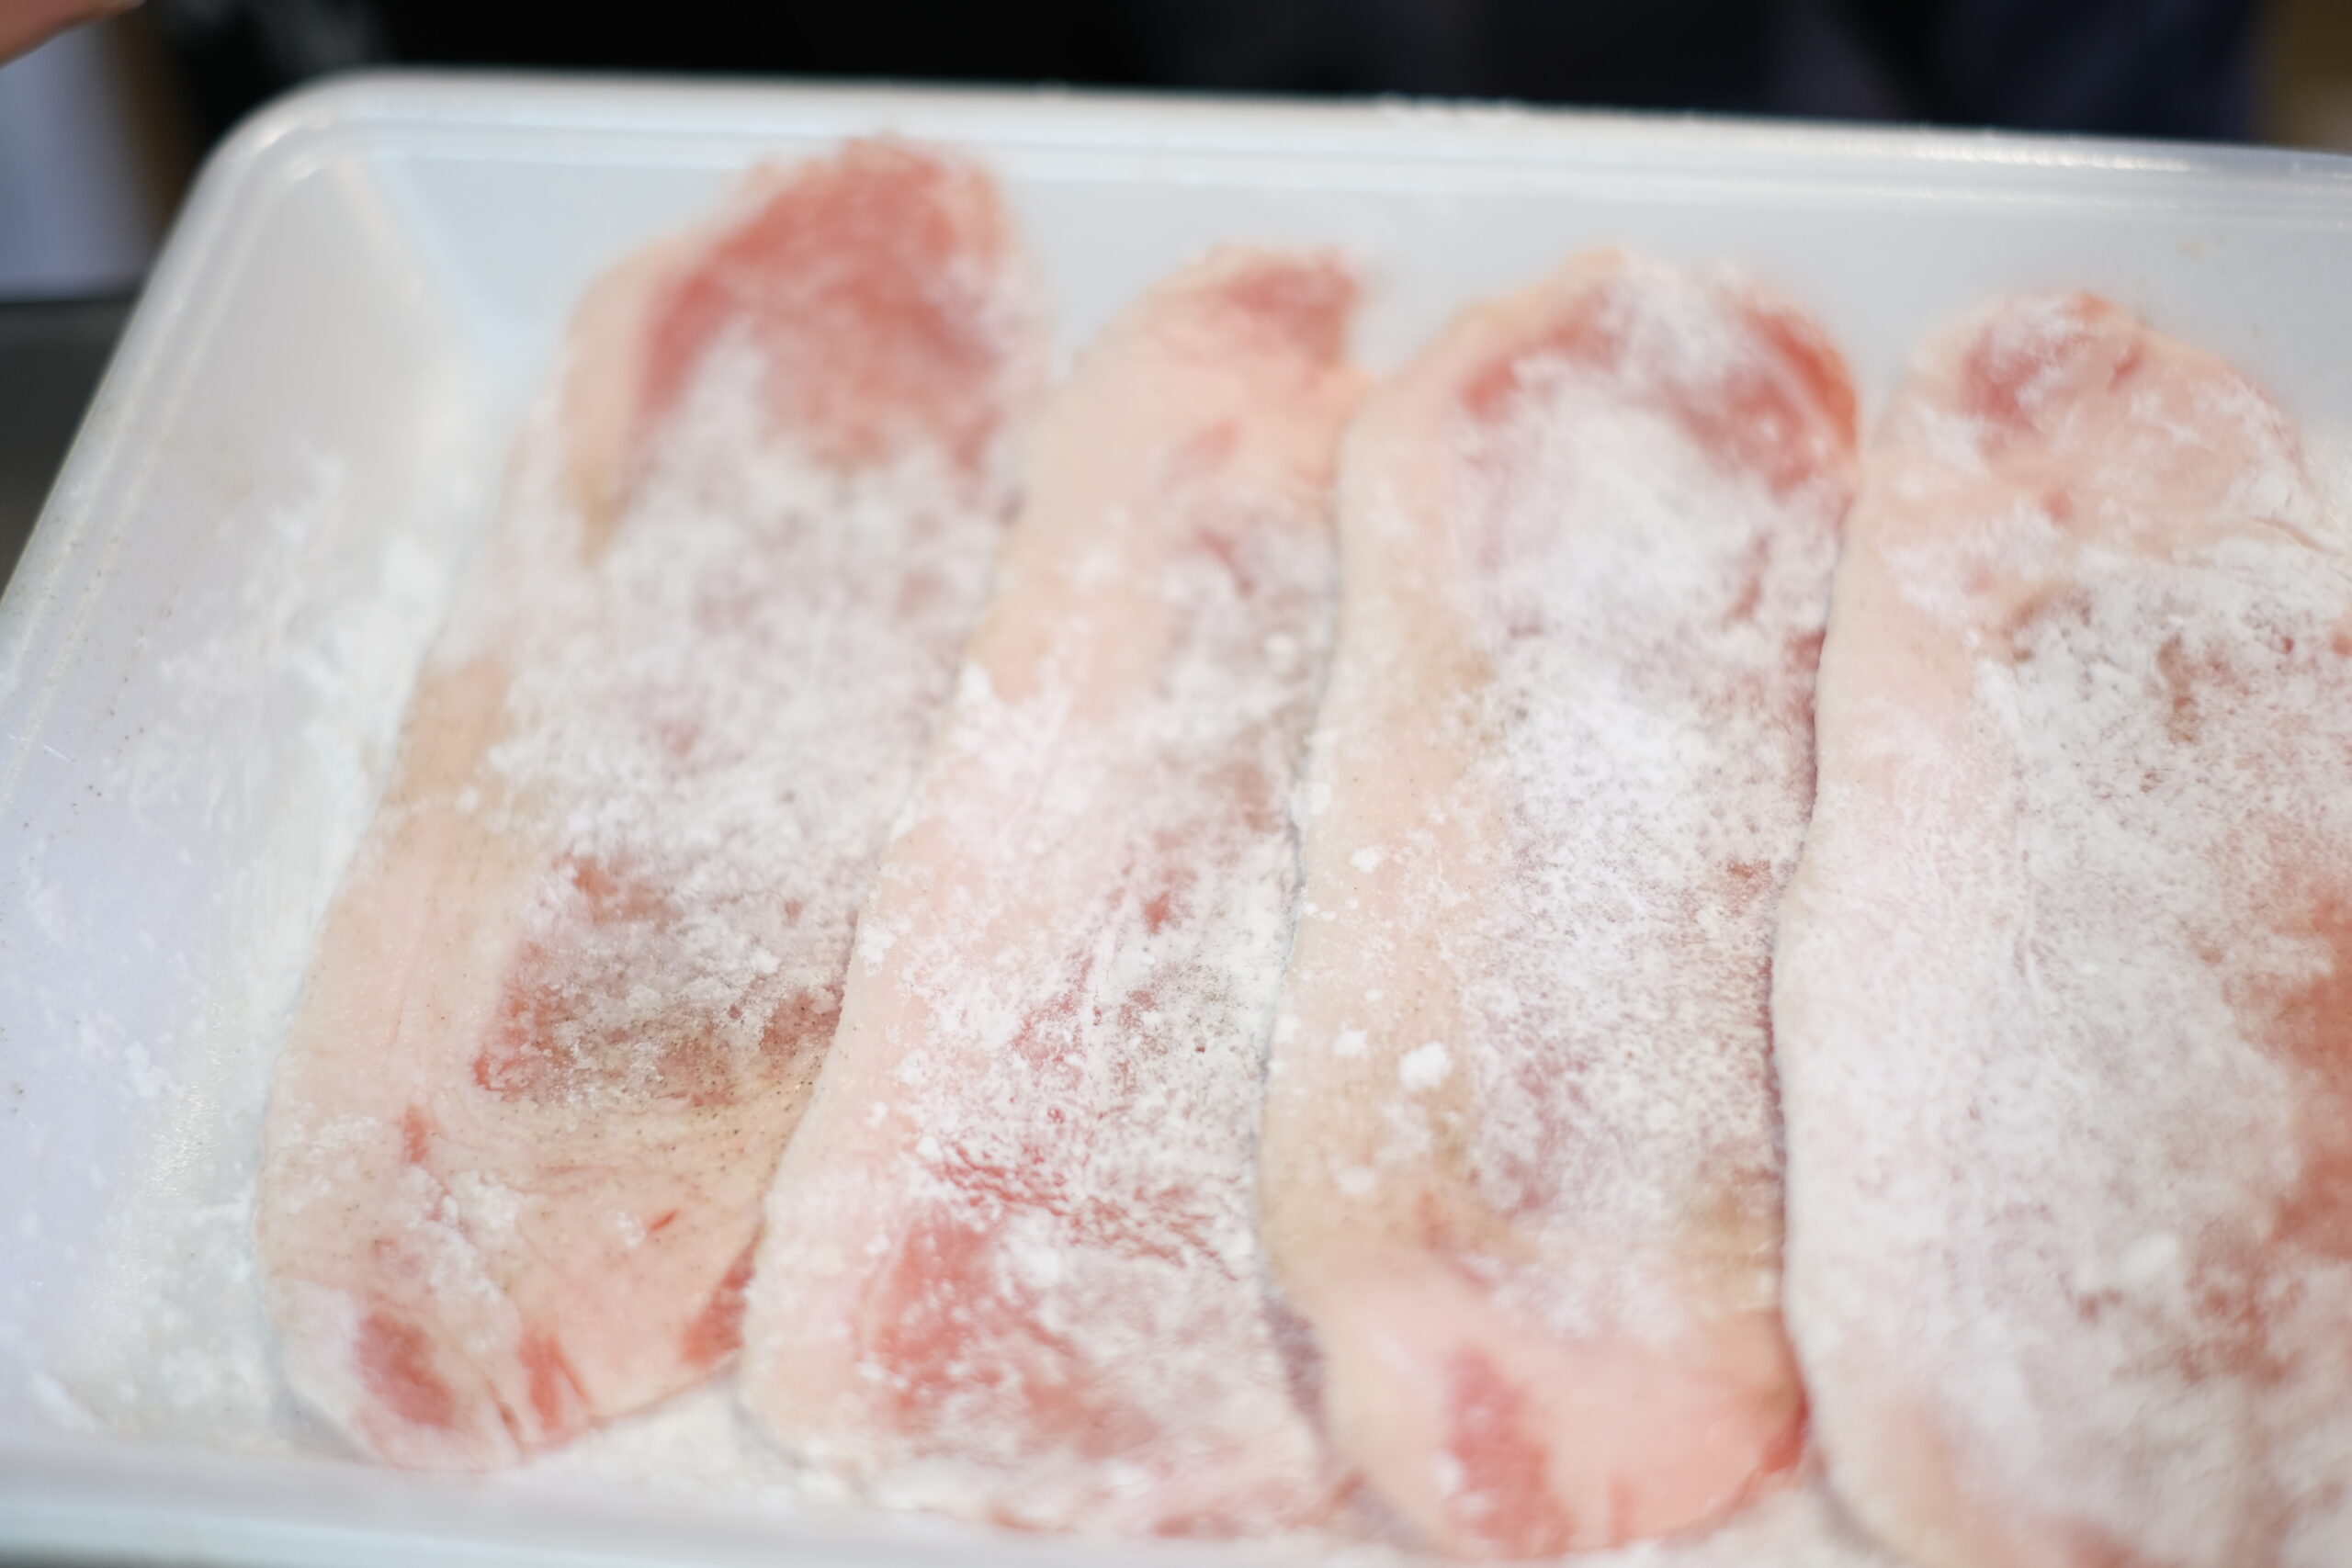 片栗粉を付けた豚ロース肉の画像です